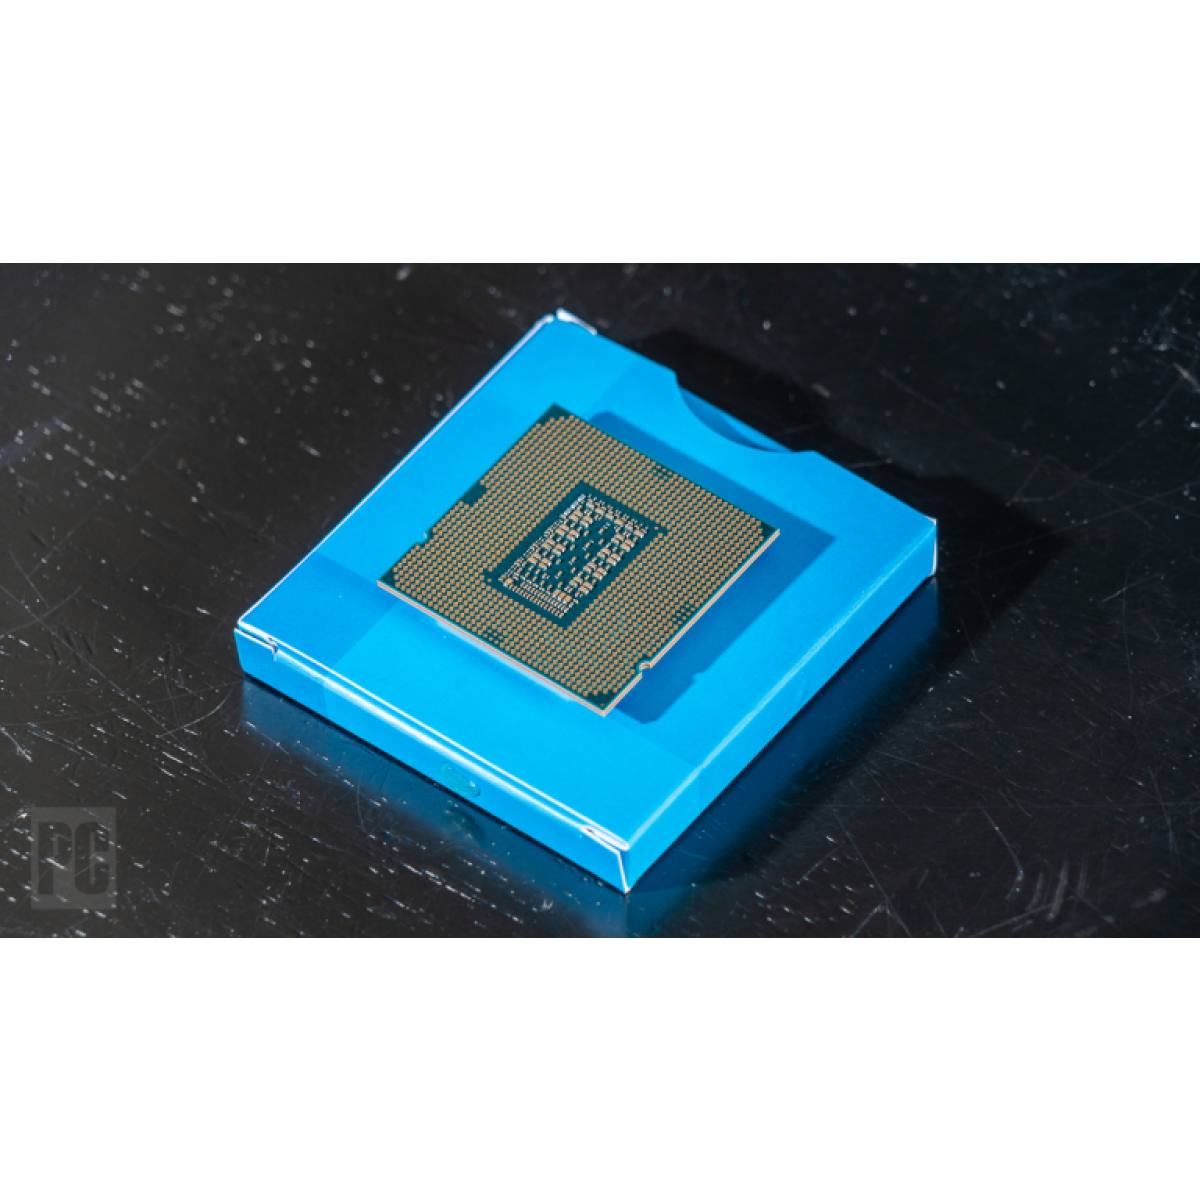 CPU Intel Core i5-11600K 3.9GHz turbo up to 4.9Ghz | 6 nhân 12 luồng | 12MB Cache, 125W